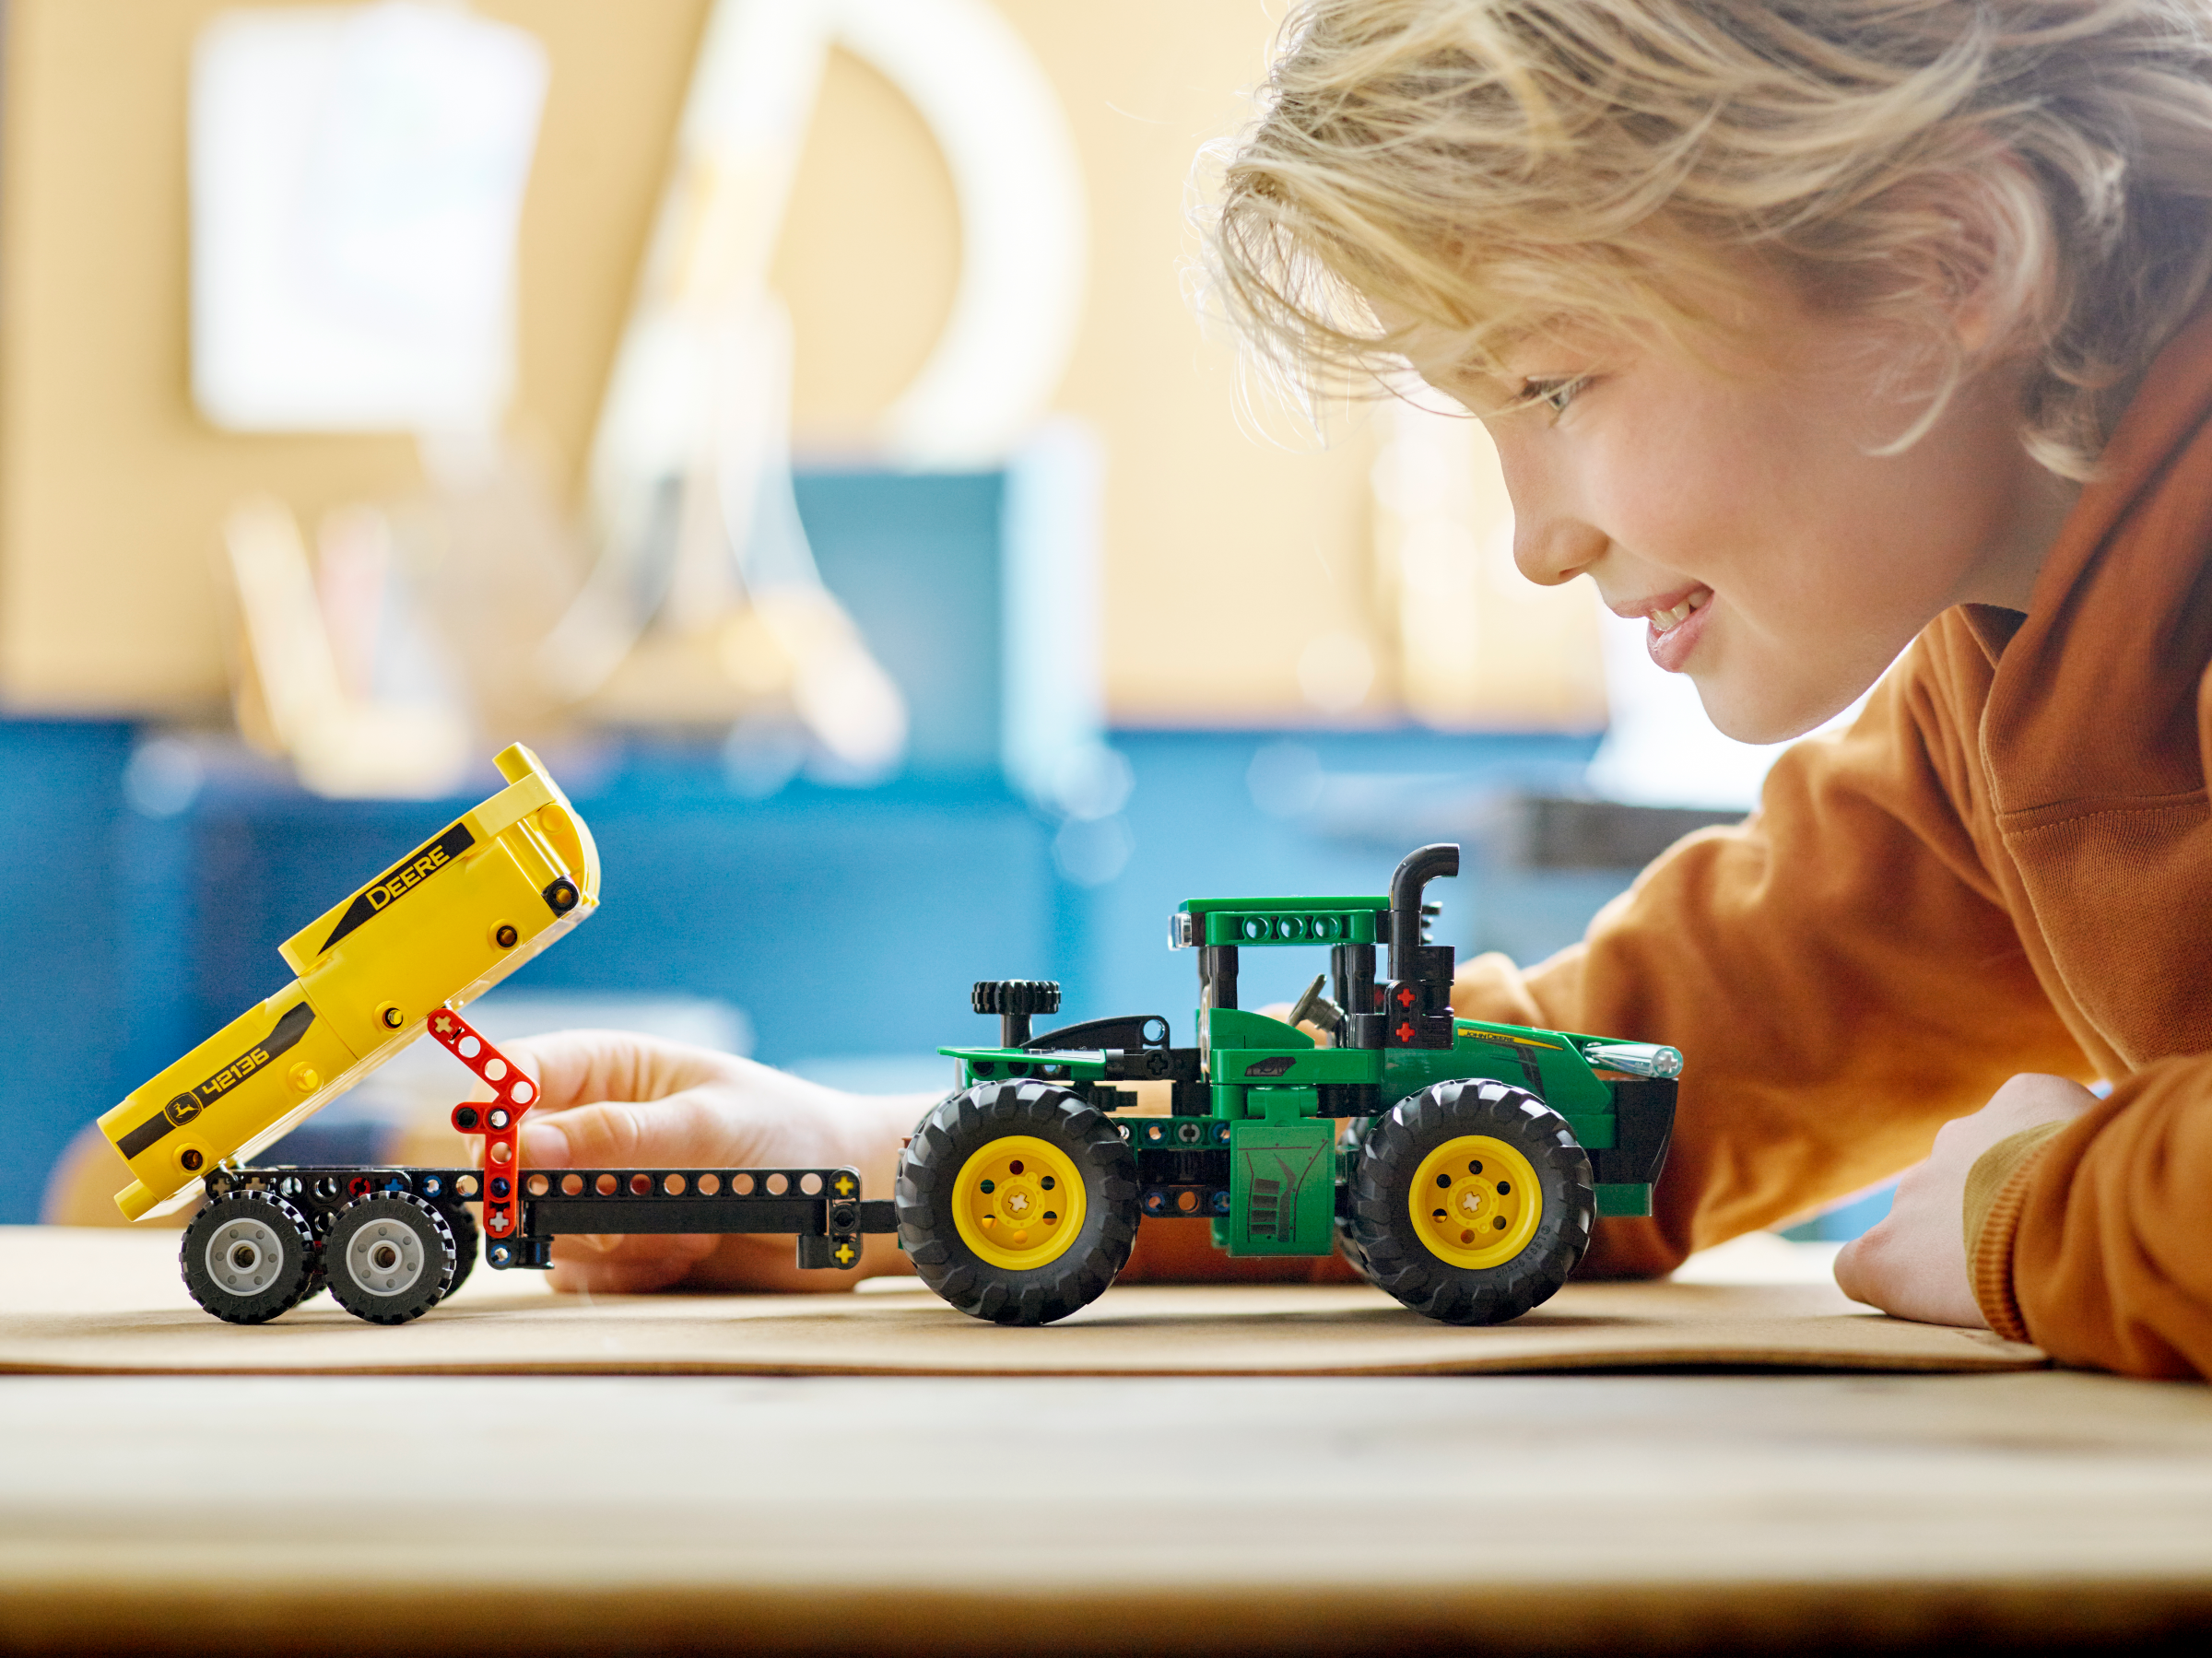 Lego®technic 42136 - tracteur john deere 9620r 4wd